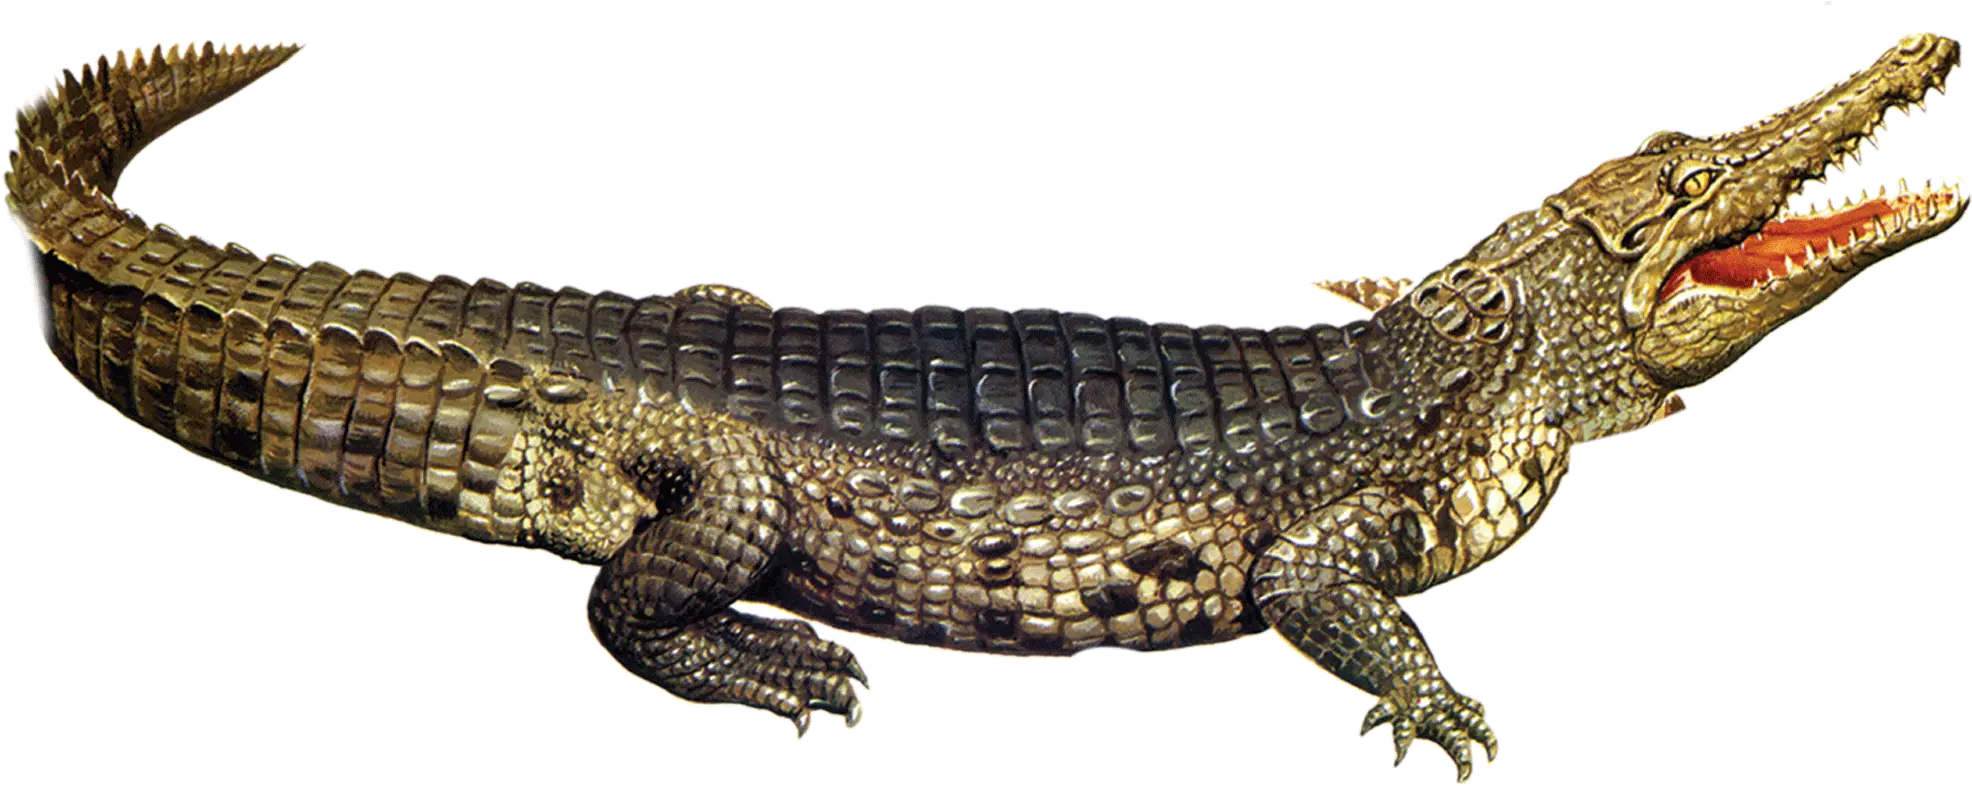 Nile Crocodile American Alligator Crocodile Png Crocodile Png